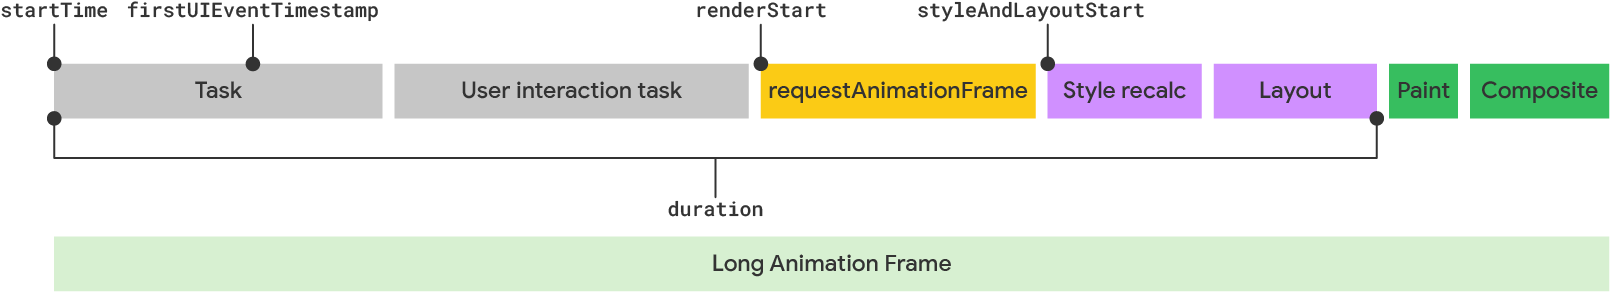 Visualização de um frame longo de animação de acordo com o modelo LoAF.